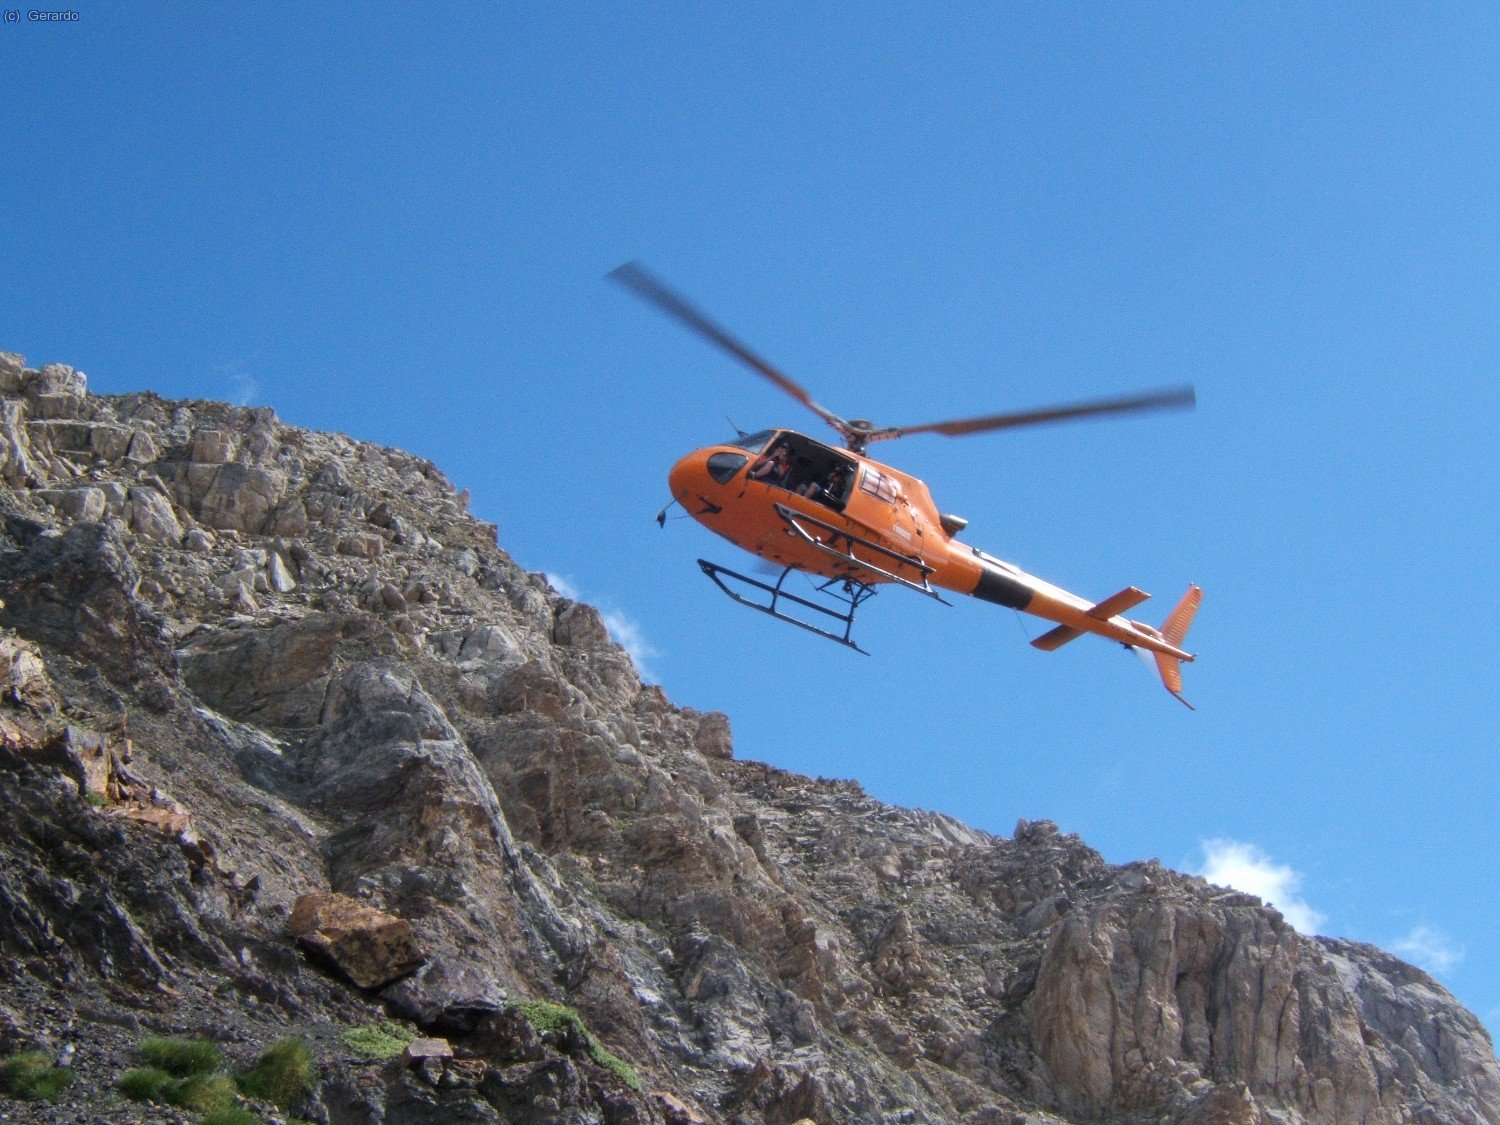 Cobertura aérea con los Vallibiernas detrás... Por suerte, un helicóptero en el monte con fines mucho más lúdicos y agradables que la asistencia a un accidente...